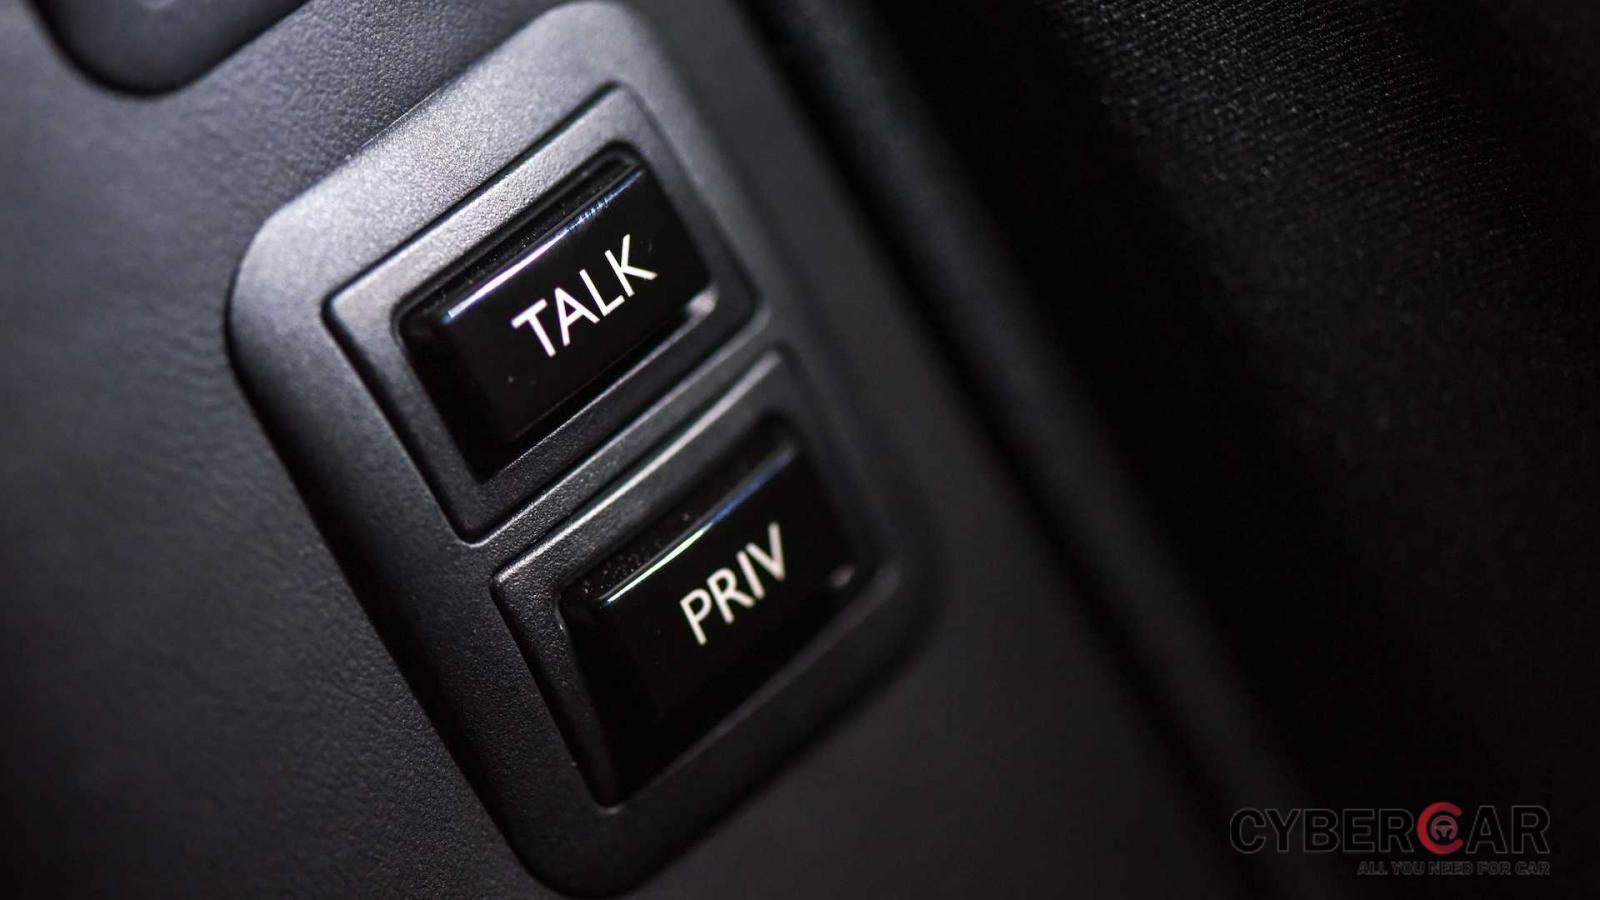 Muốn liên lạc với tài xế chủ nhân chỉ cần sử dụng điện thoại nội bộ được trang bị sẵn nút bấm bên trong xe